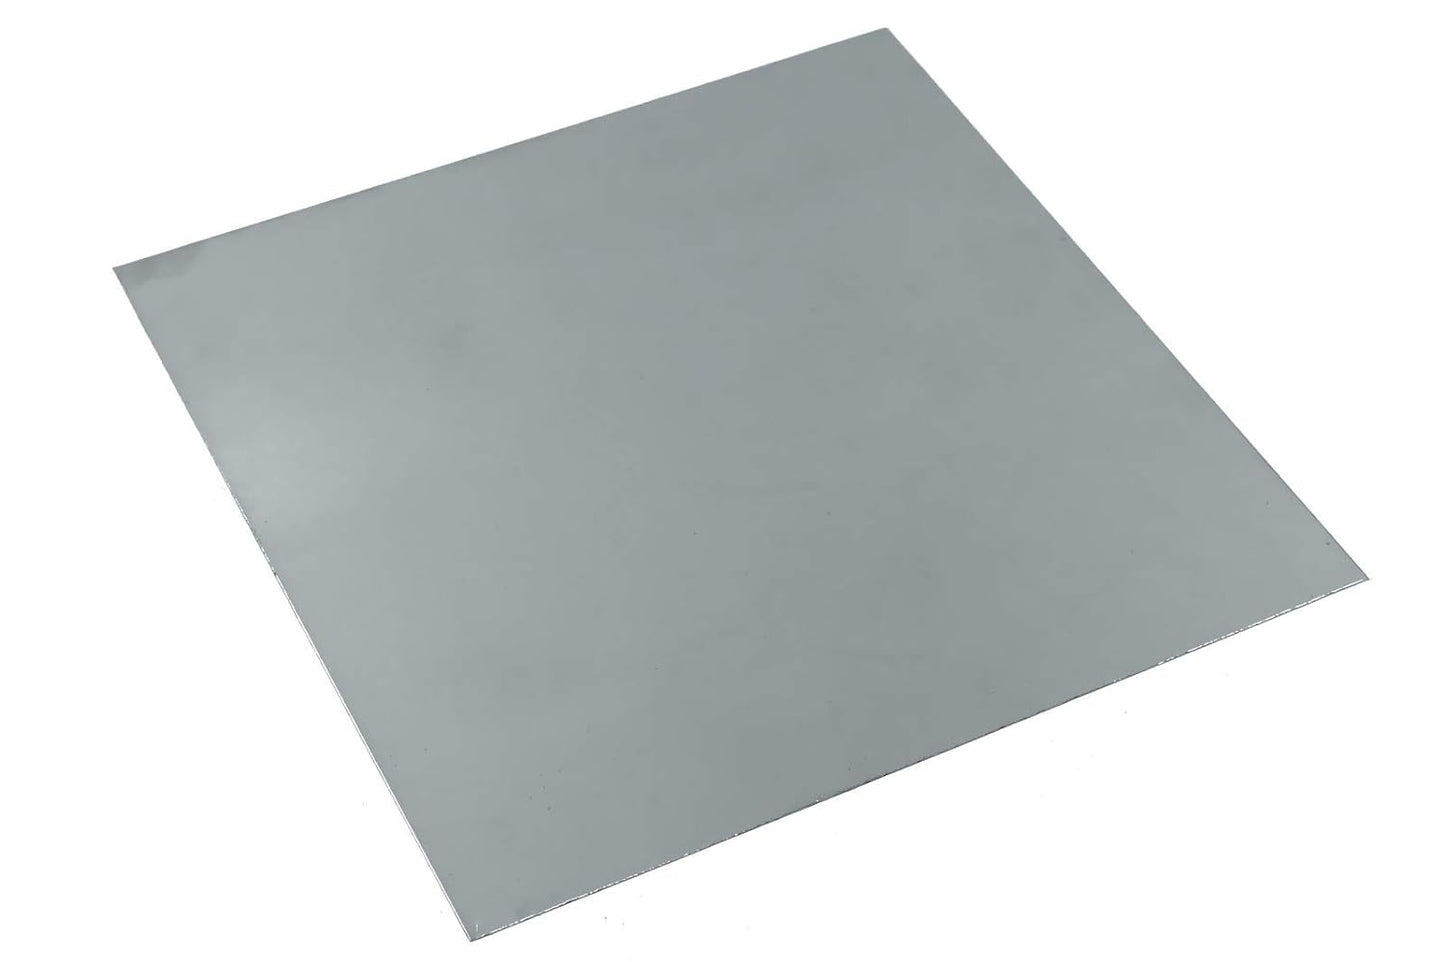 fuxus® Nitinol Metallstreifen Blech Platte 100mm x 100mm Formgedächtnis Legierung Metallband Shape Memory Alloy